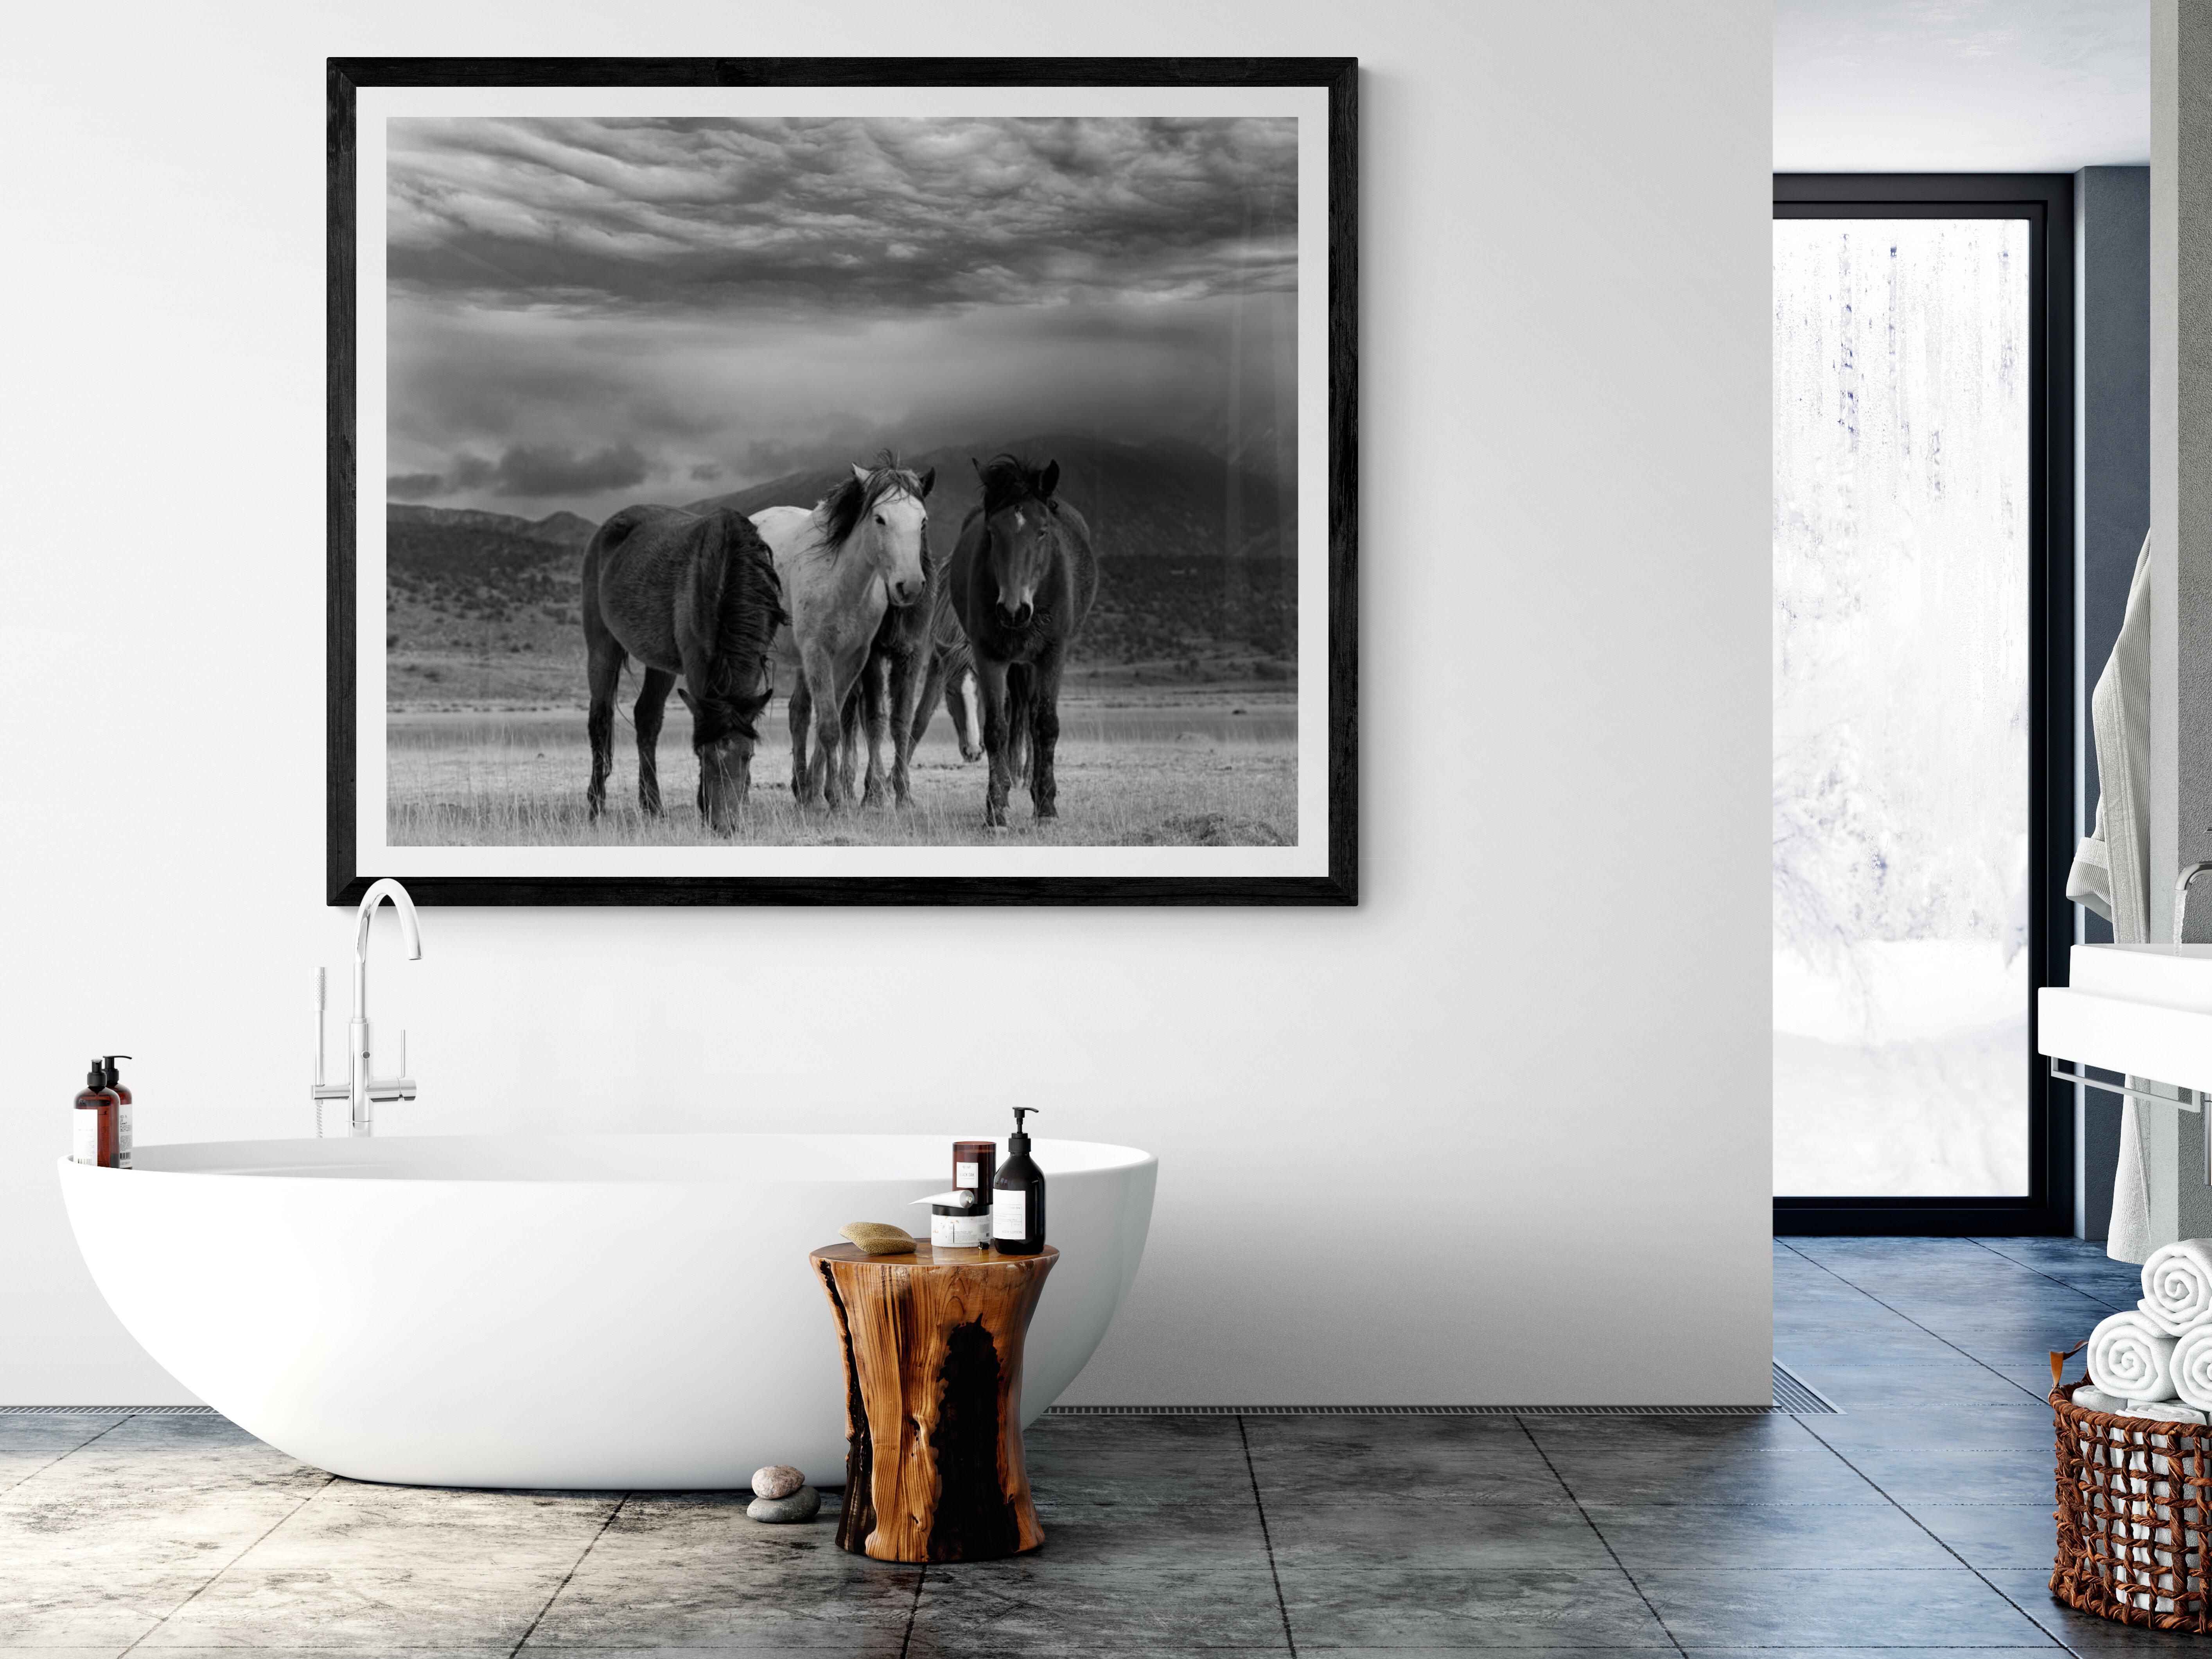 Il s'agit d'une photographie contemporaine en noir et blanc de chevaux sauvages d'Amérique du Nord.
Photographie par Shane Russeck
Imprimé sur du papier d'archives 
Encadrement disponible. Renseignez-vous sur les tarifs. 
Non signé
45